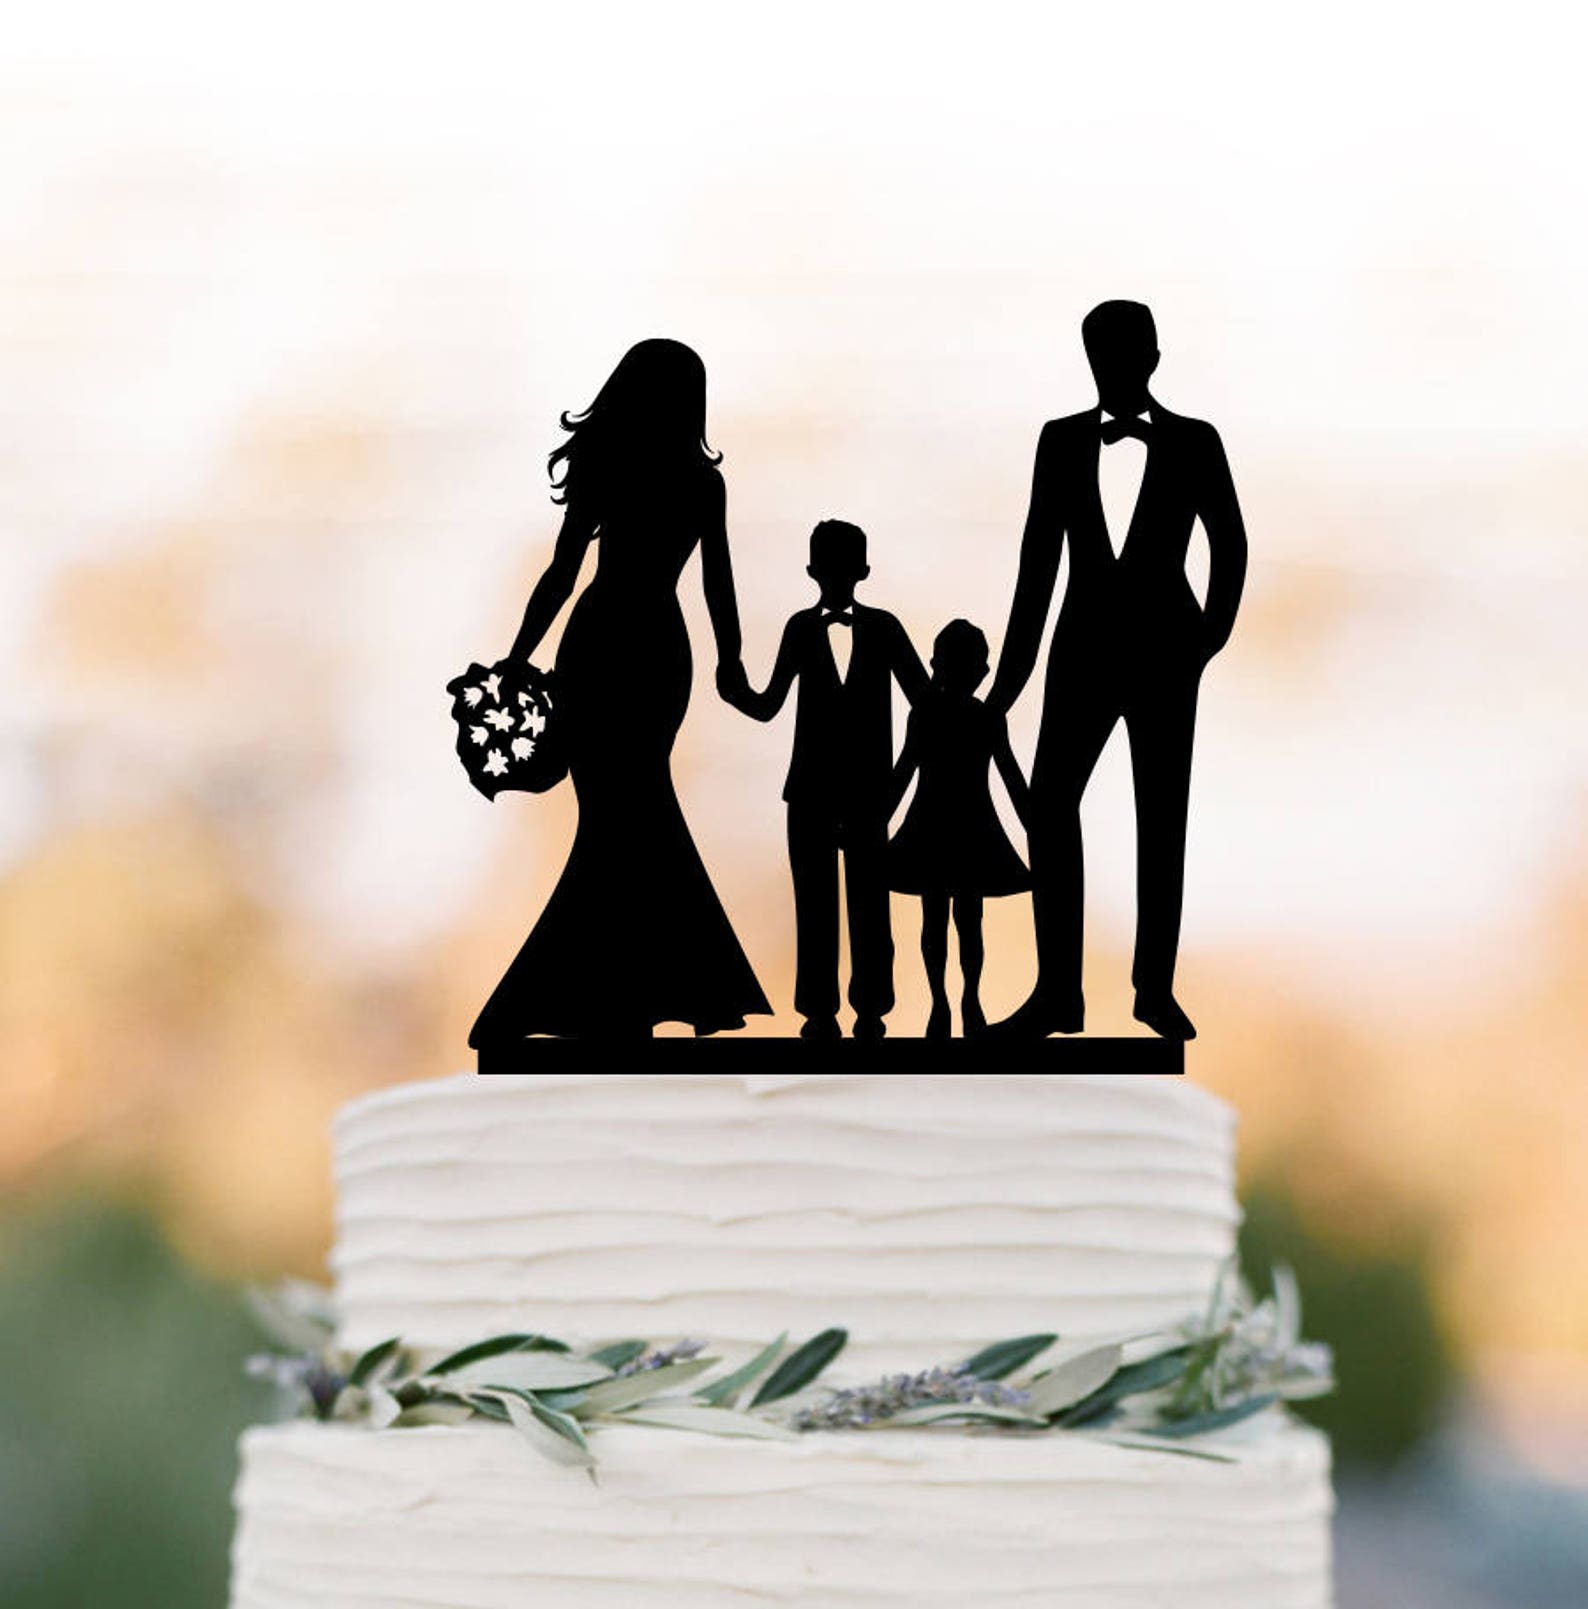 Год семьи торт. Торт с силуэтом семьи. Торт силуэт. Свадебный торт с силуэтами жениха и невесты. Свадебный торт семейный.